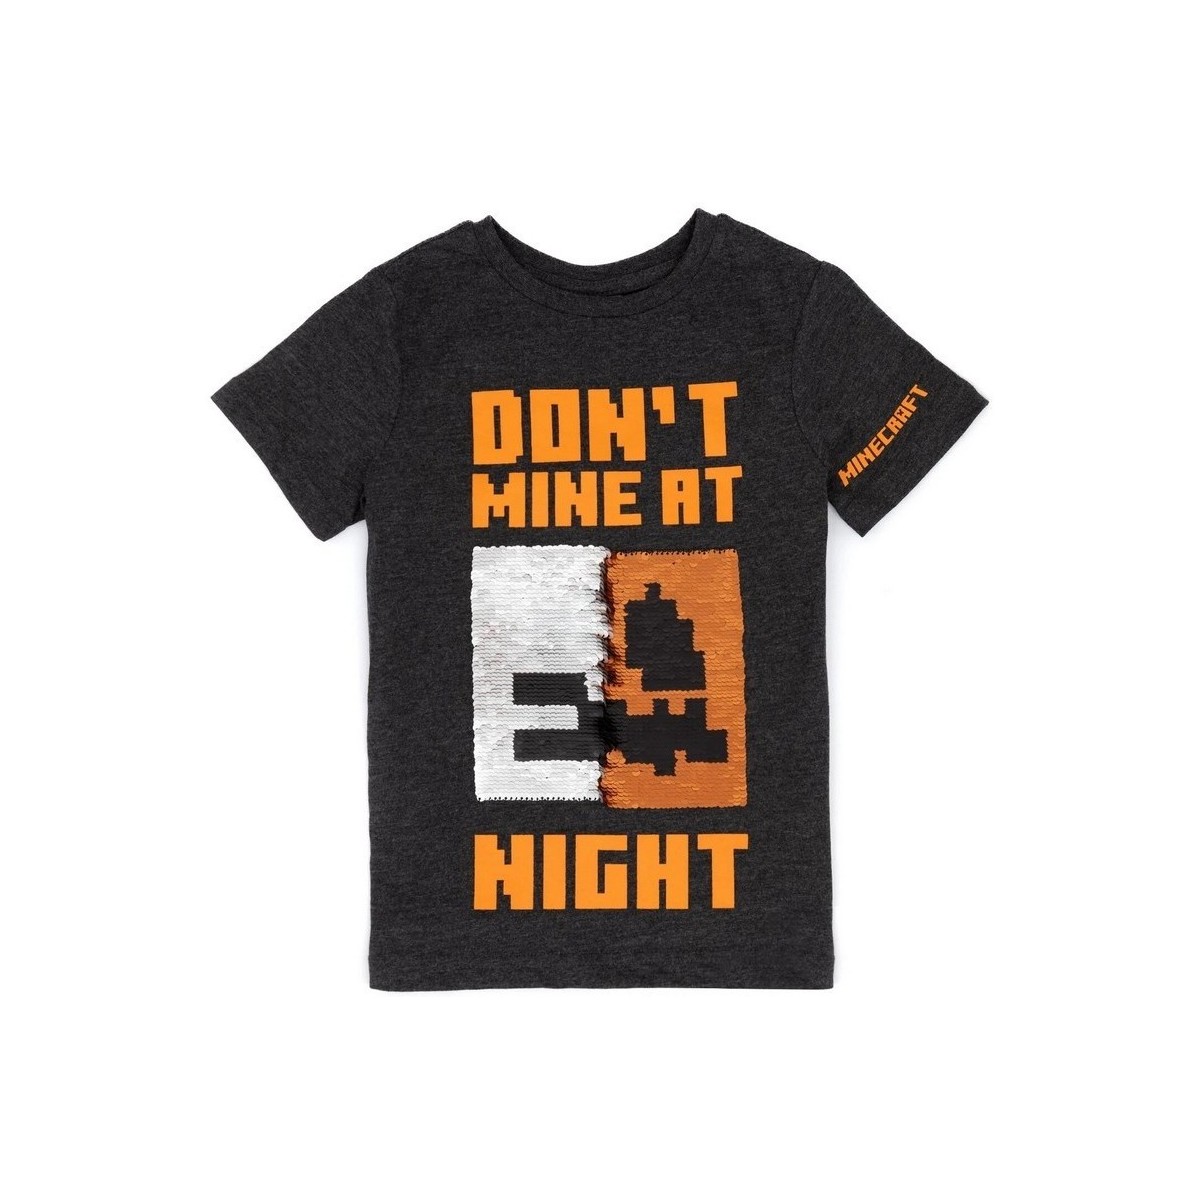 Vêtements Enfant T-shirts manches courtes Minecraft Don't Mine At Night Noir